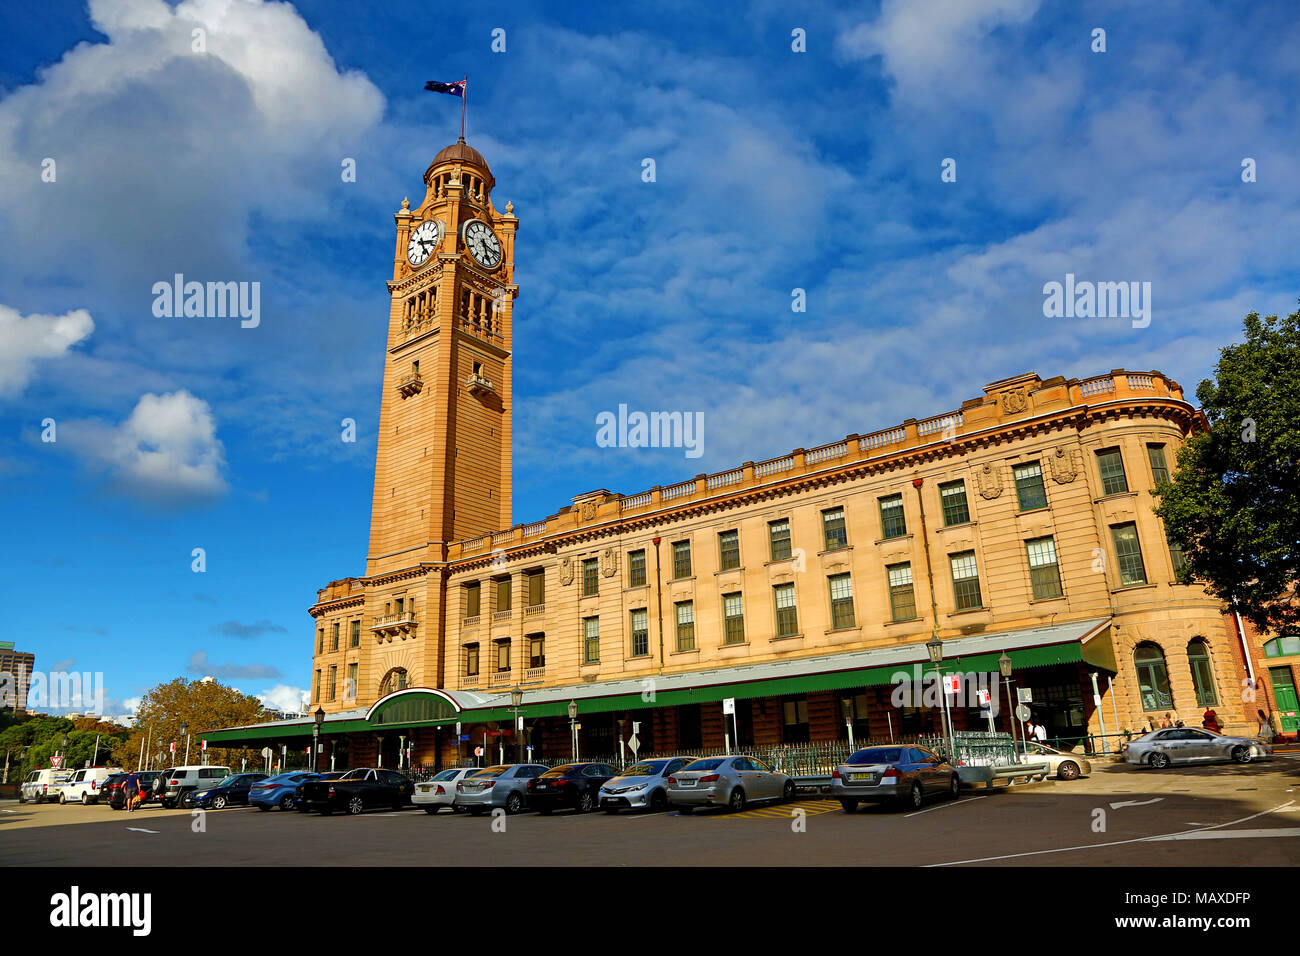 La gare centrale et de la tour de l'horloge, Sydney, New South Wales, Australia Banque D'Images